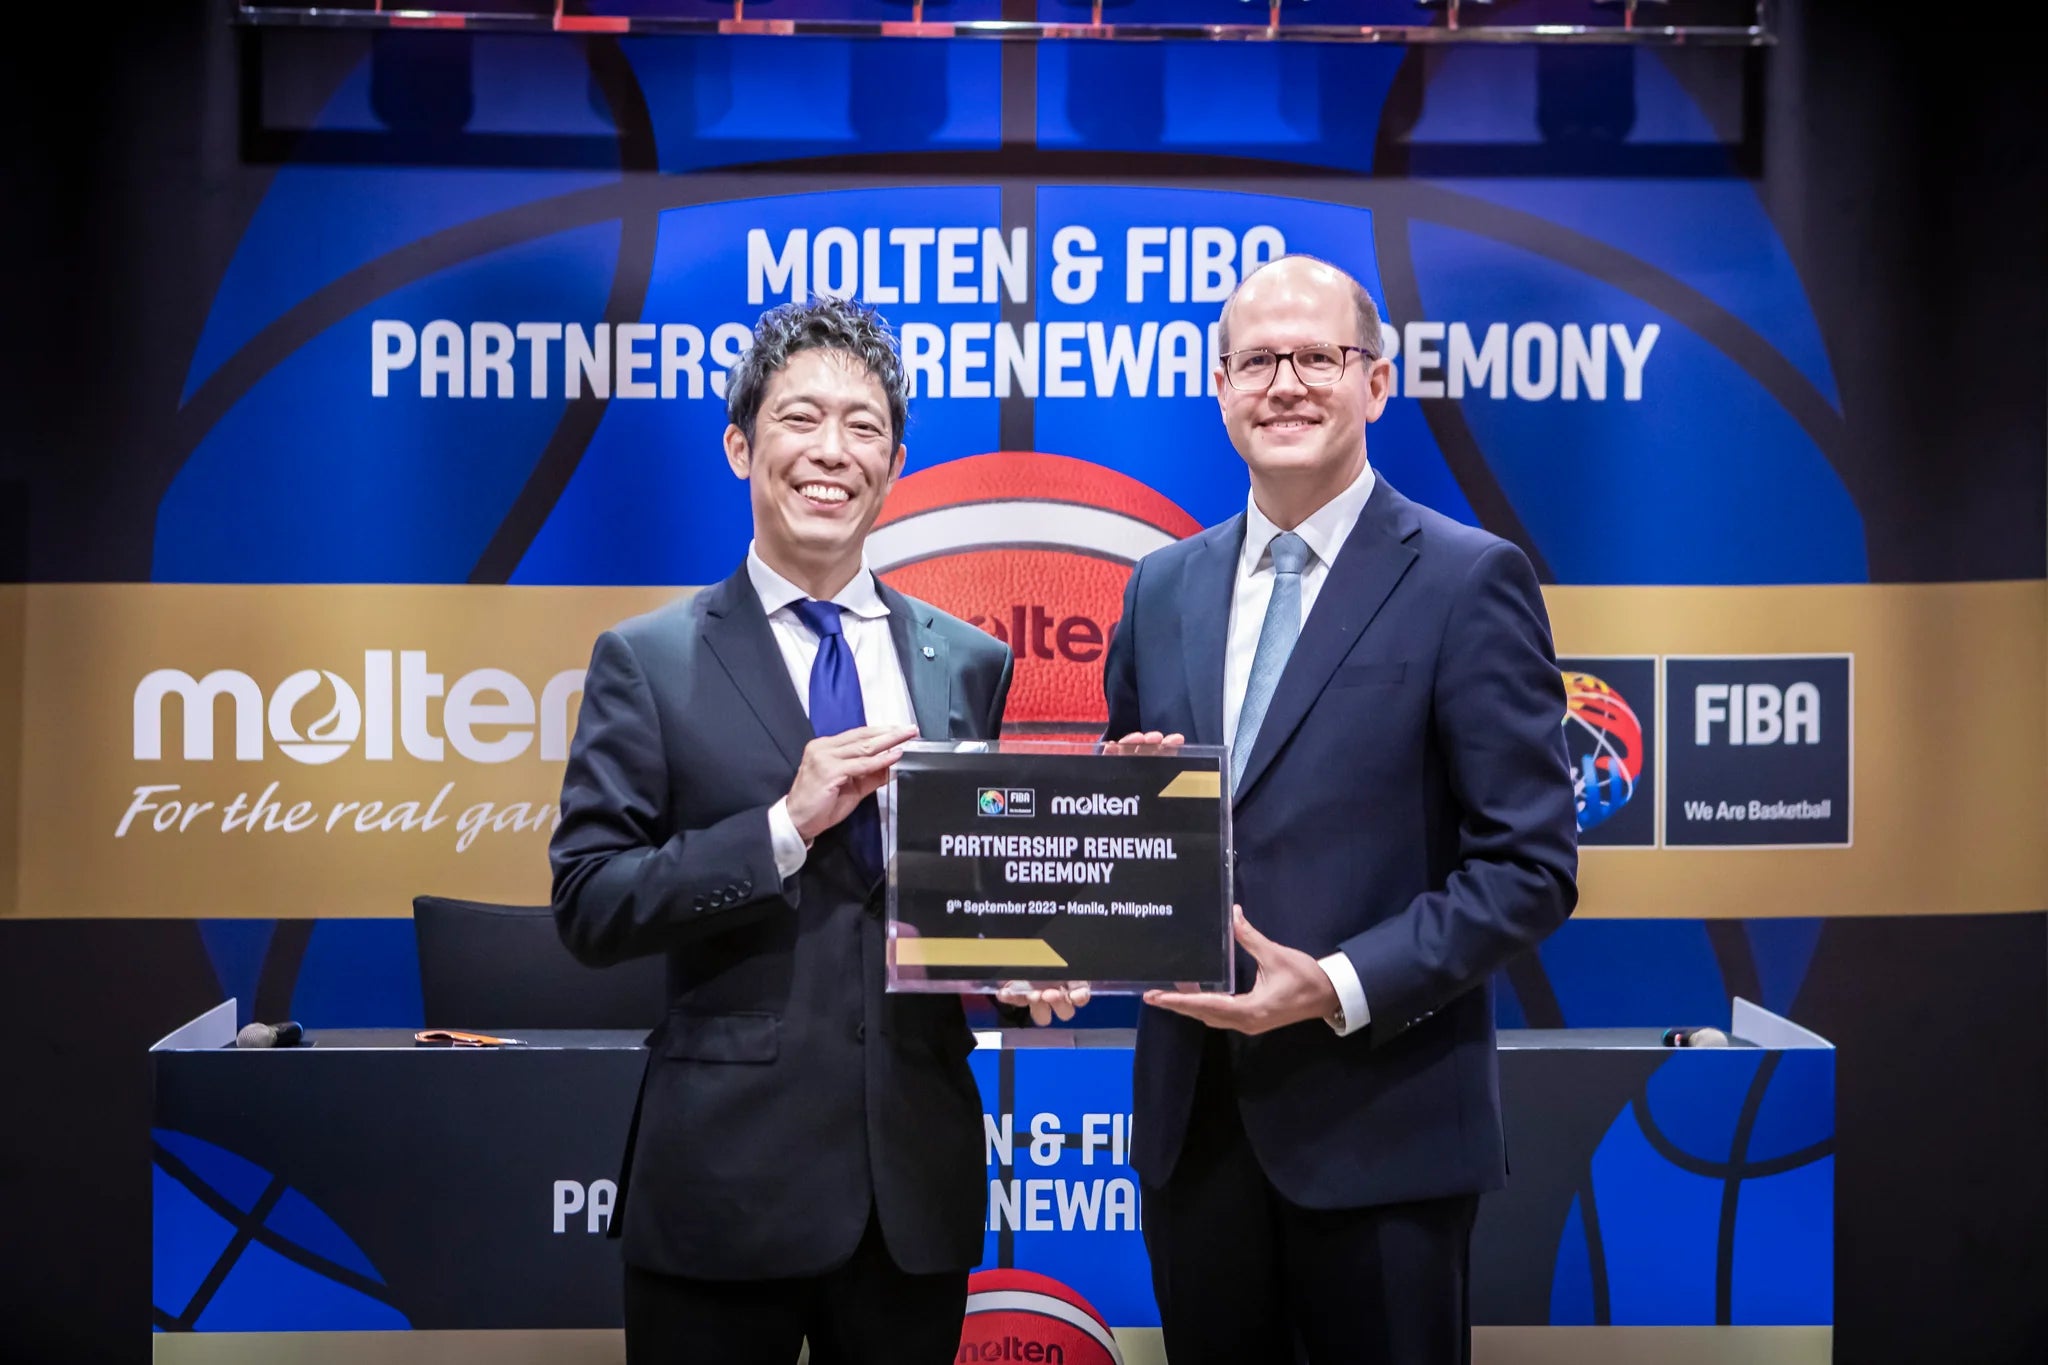 Molten y FIBA reafirman su asociación que data desde 1982 - Productos Superiores.